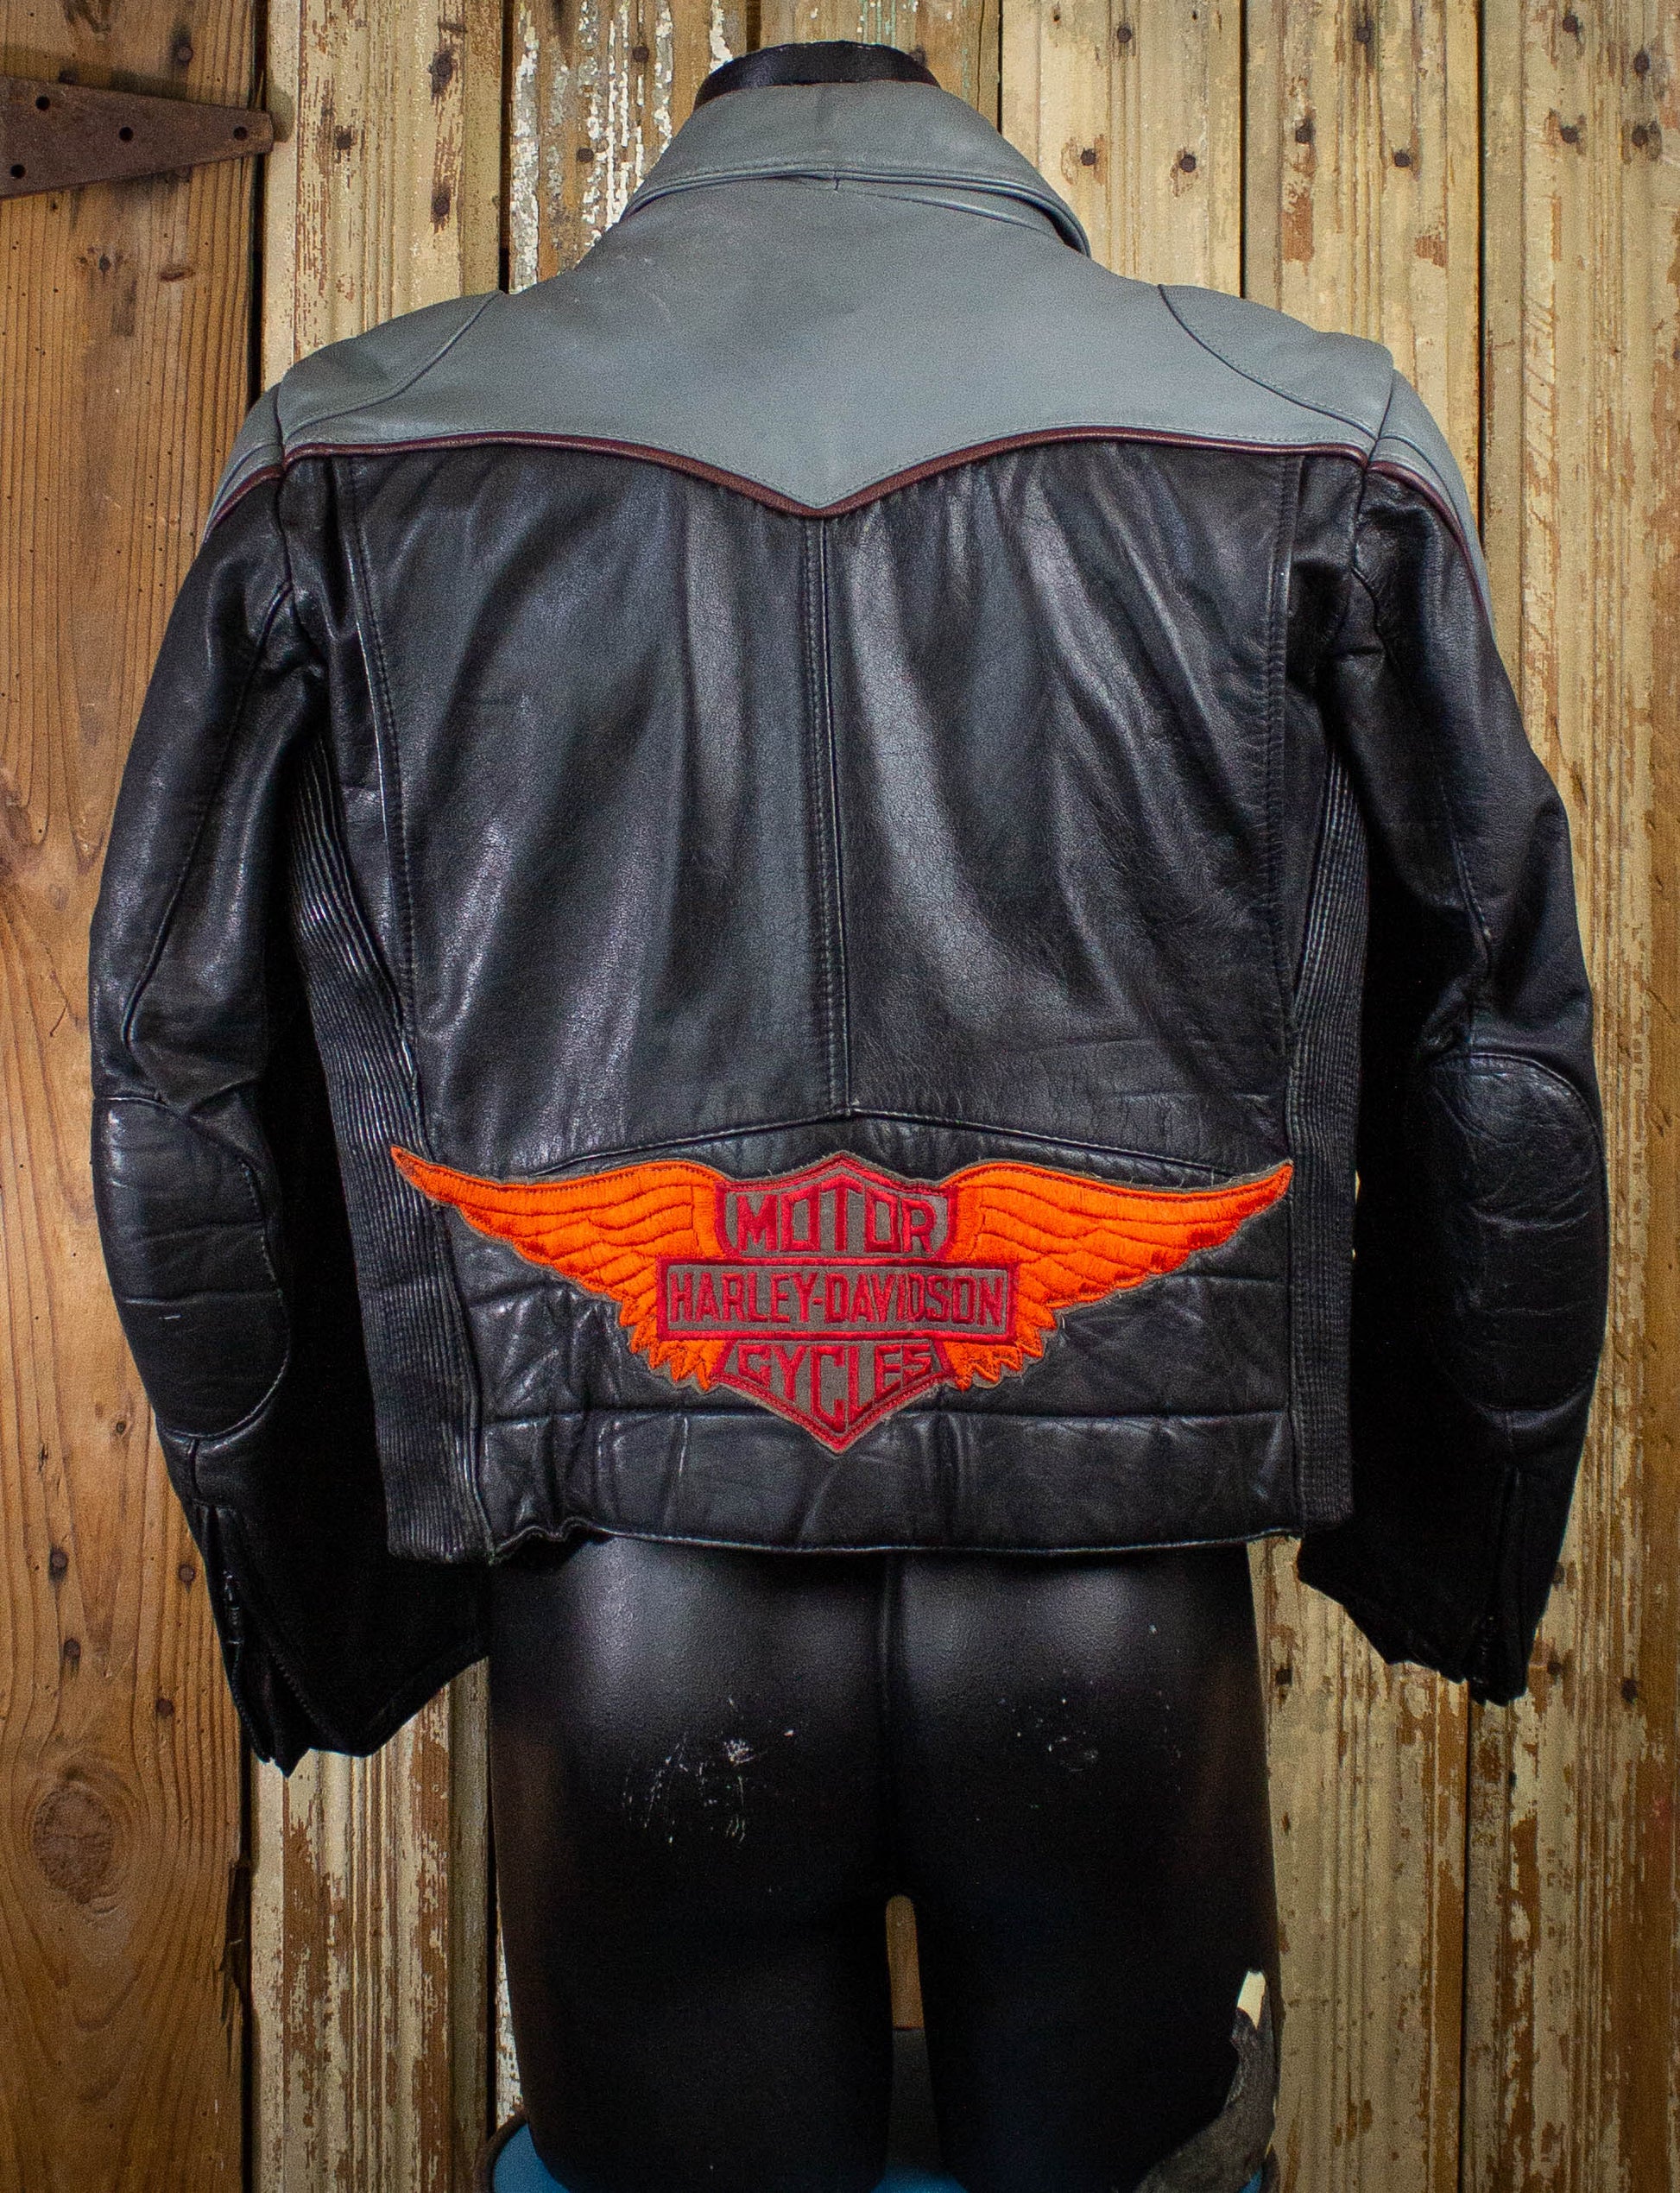 Vintage Tour Lion Harley Davidson Leather Biker Jacket 90s Black/Gray –  Black Shag Vintage